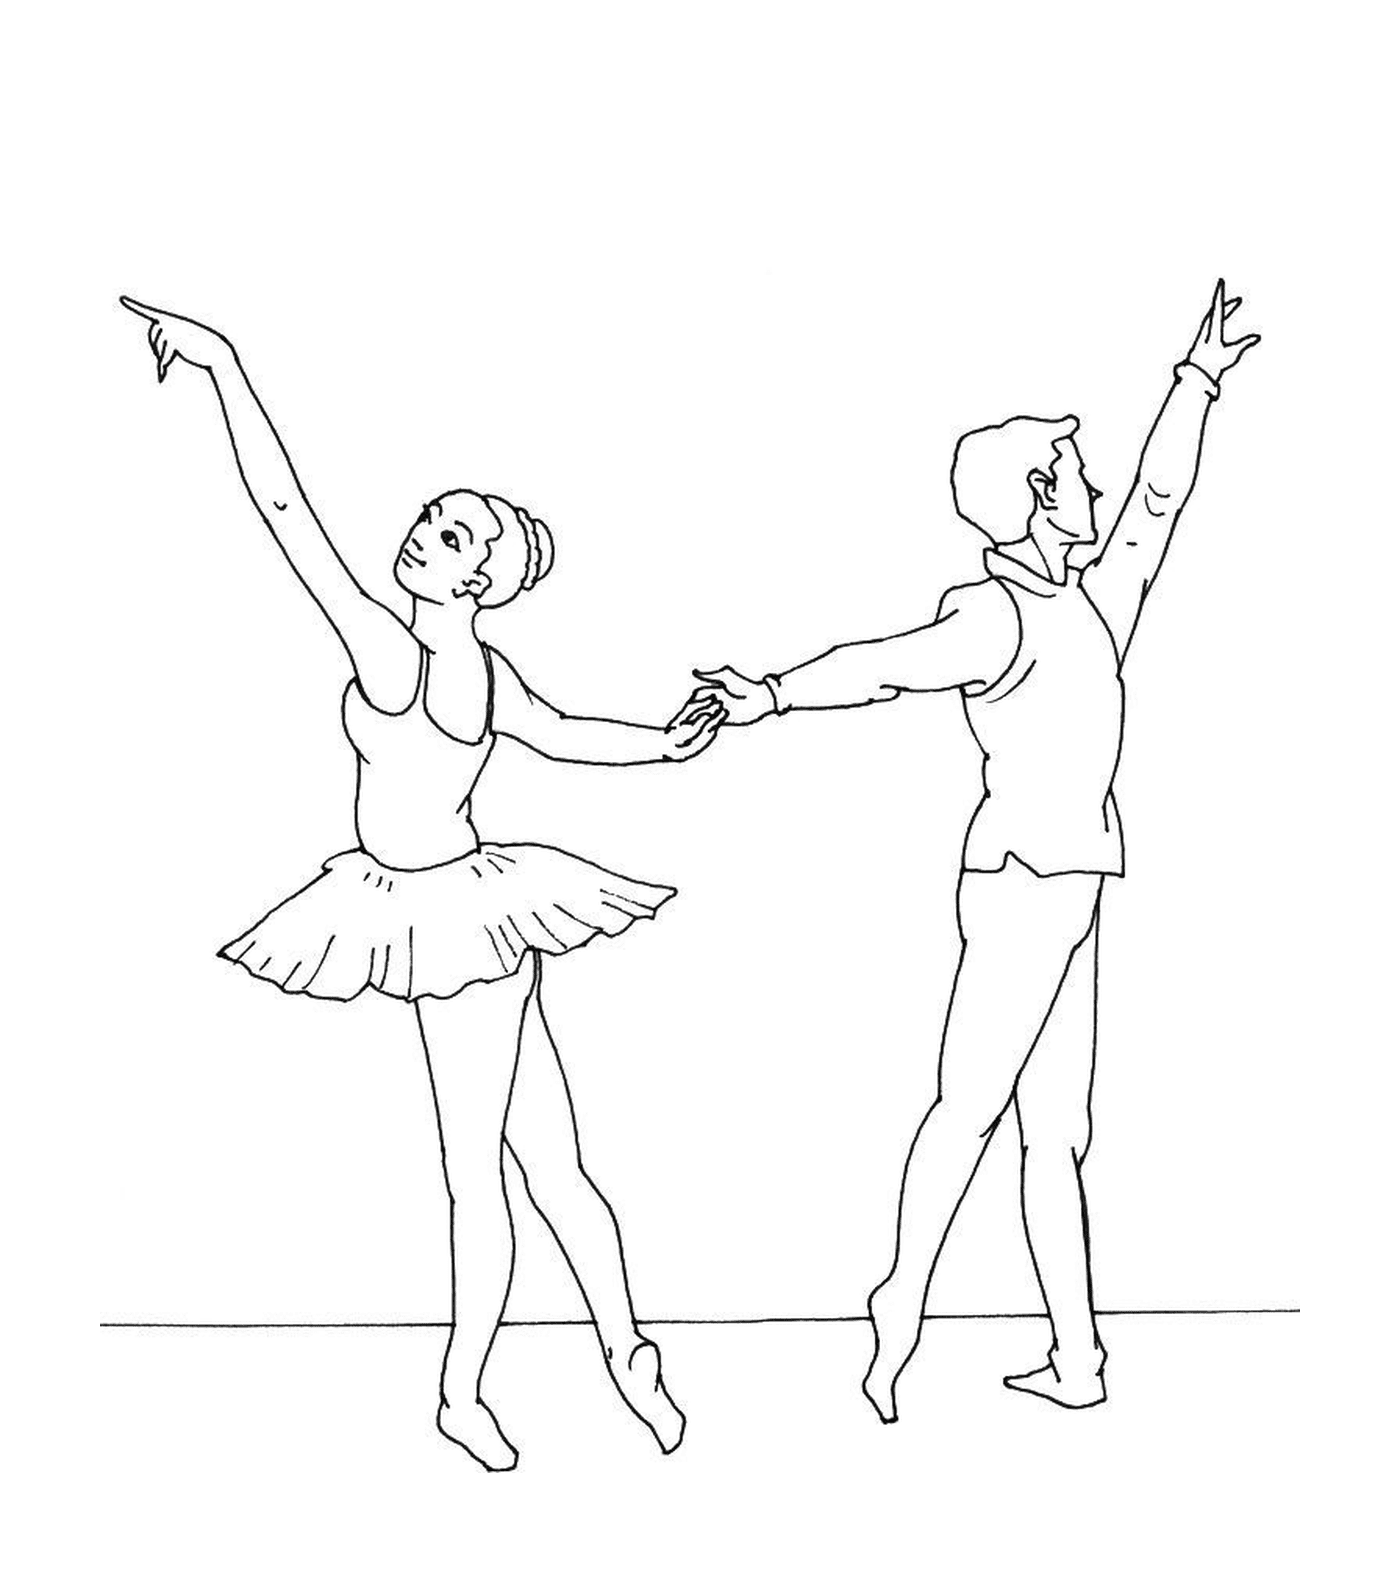  Bailarina y bailarina sujetando la mano 